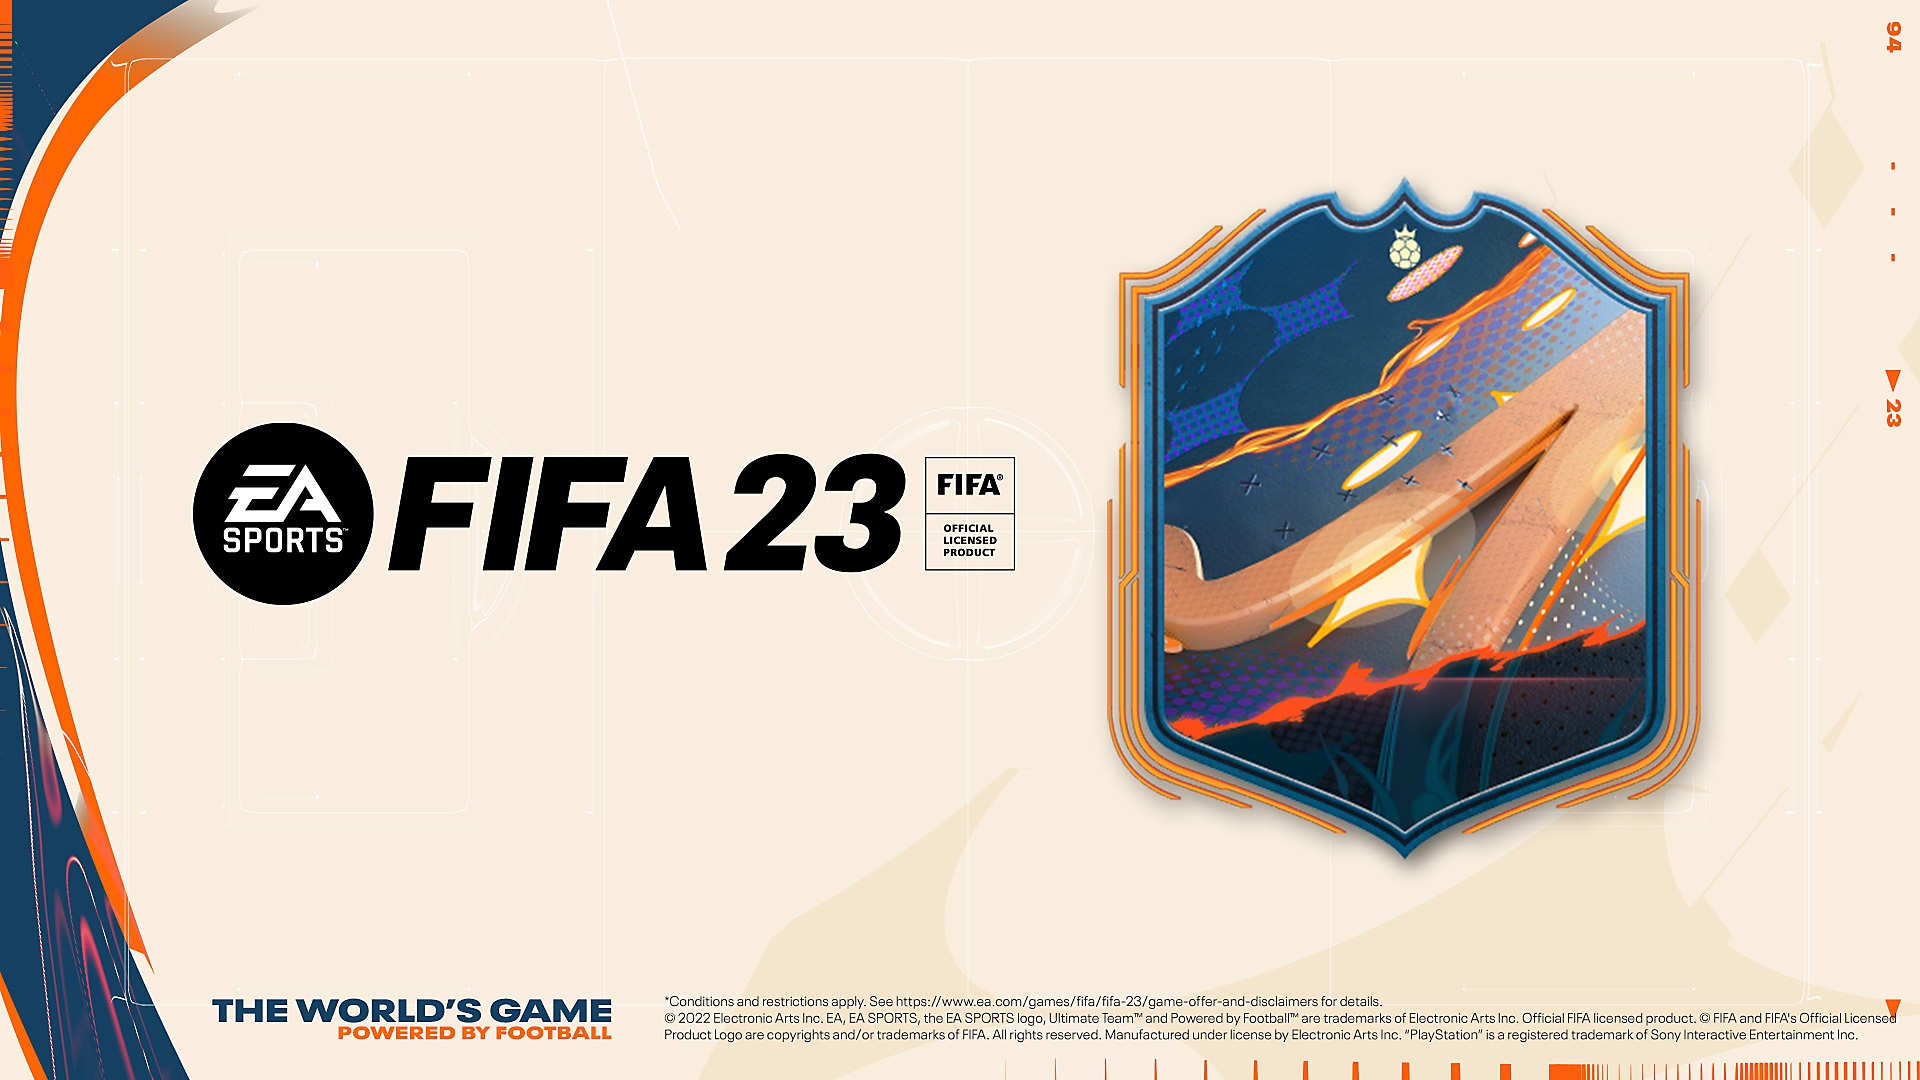 Grafika zamówienia przedpremierowego gry EA Sports FIFA 23 z kolorowym herbem i logo FIFA 23